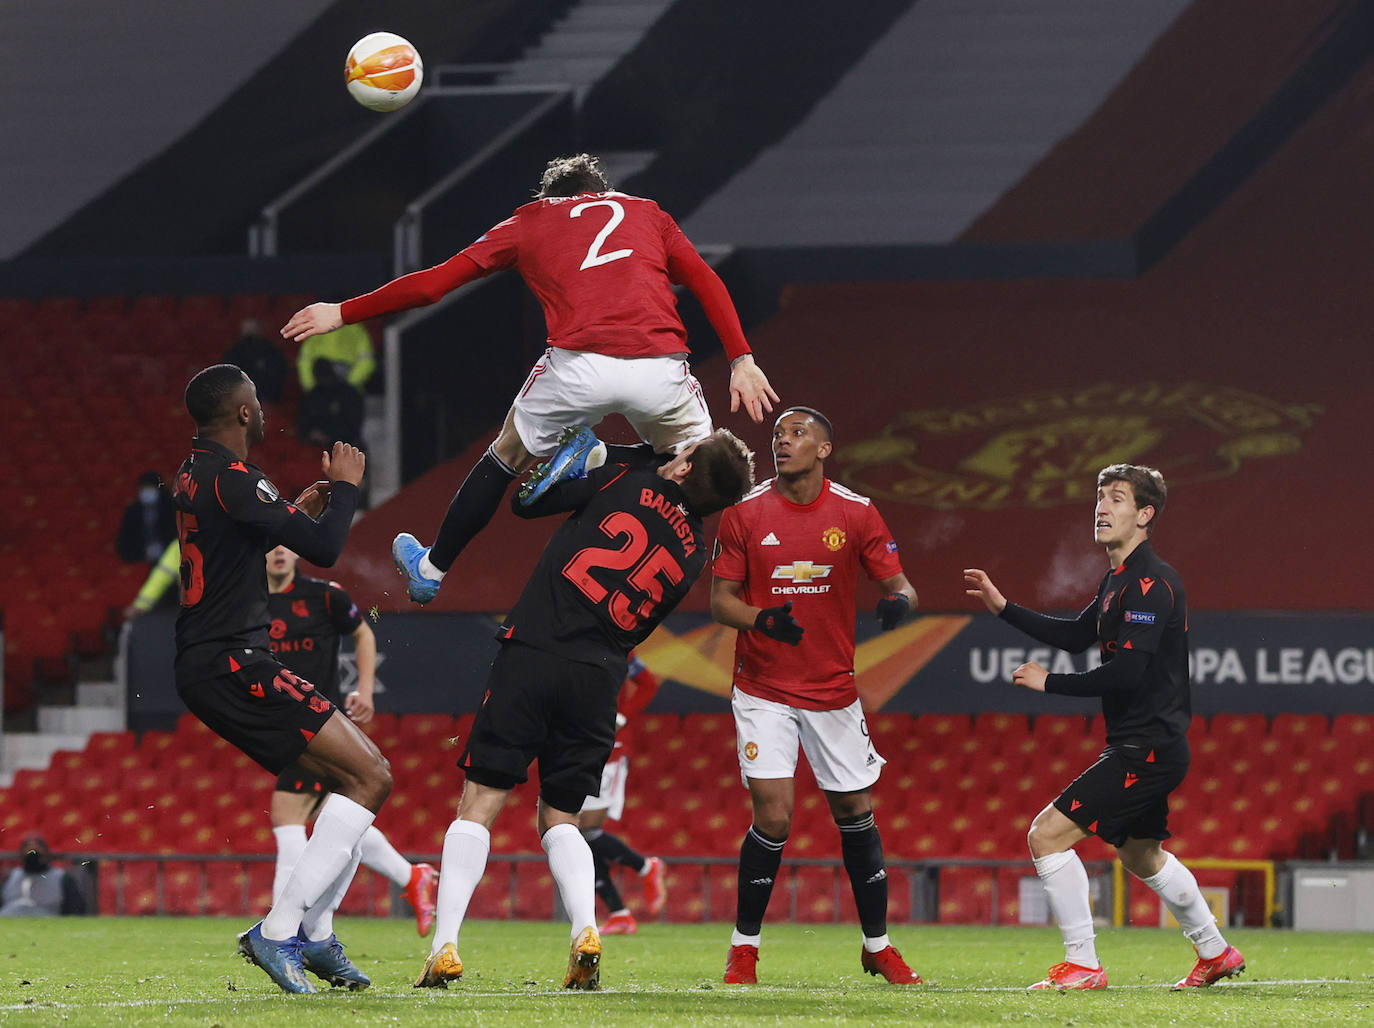 Fotos: Las imágenes del Manchester United - Real Sociedad